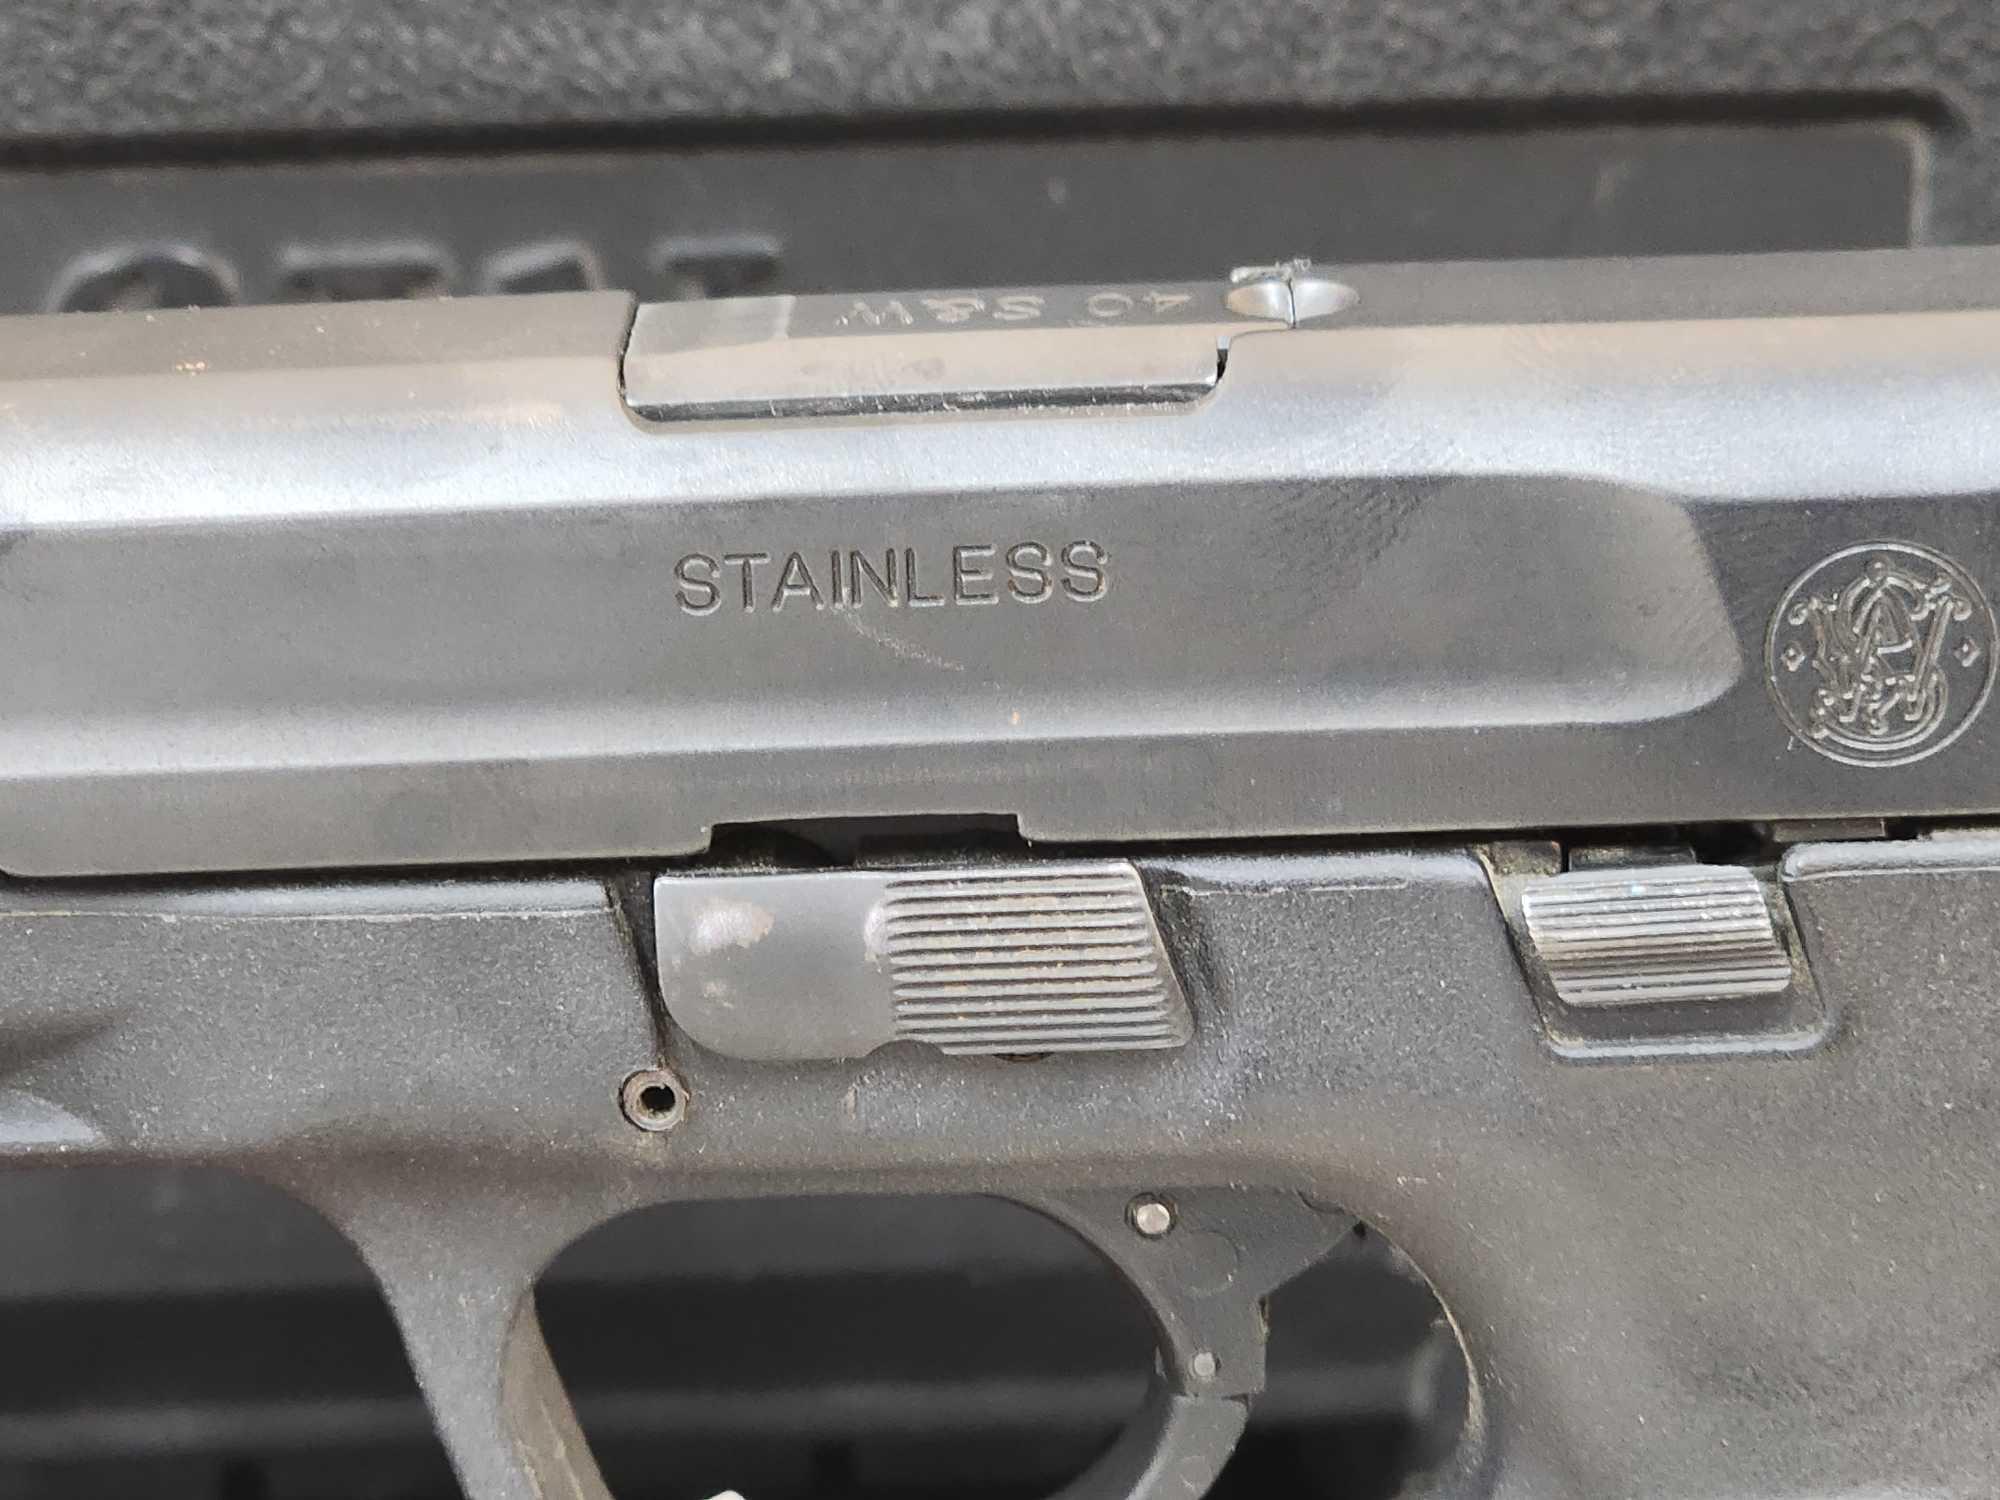 Smith & Wesson M&P 40 .40cal Semi Auto Pistol